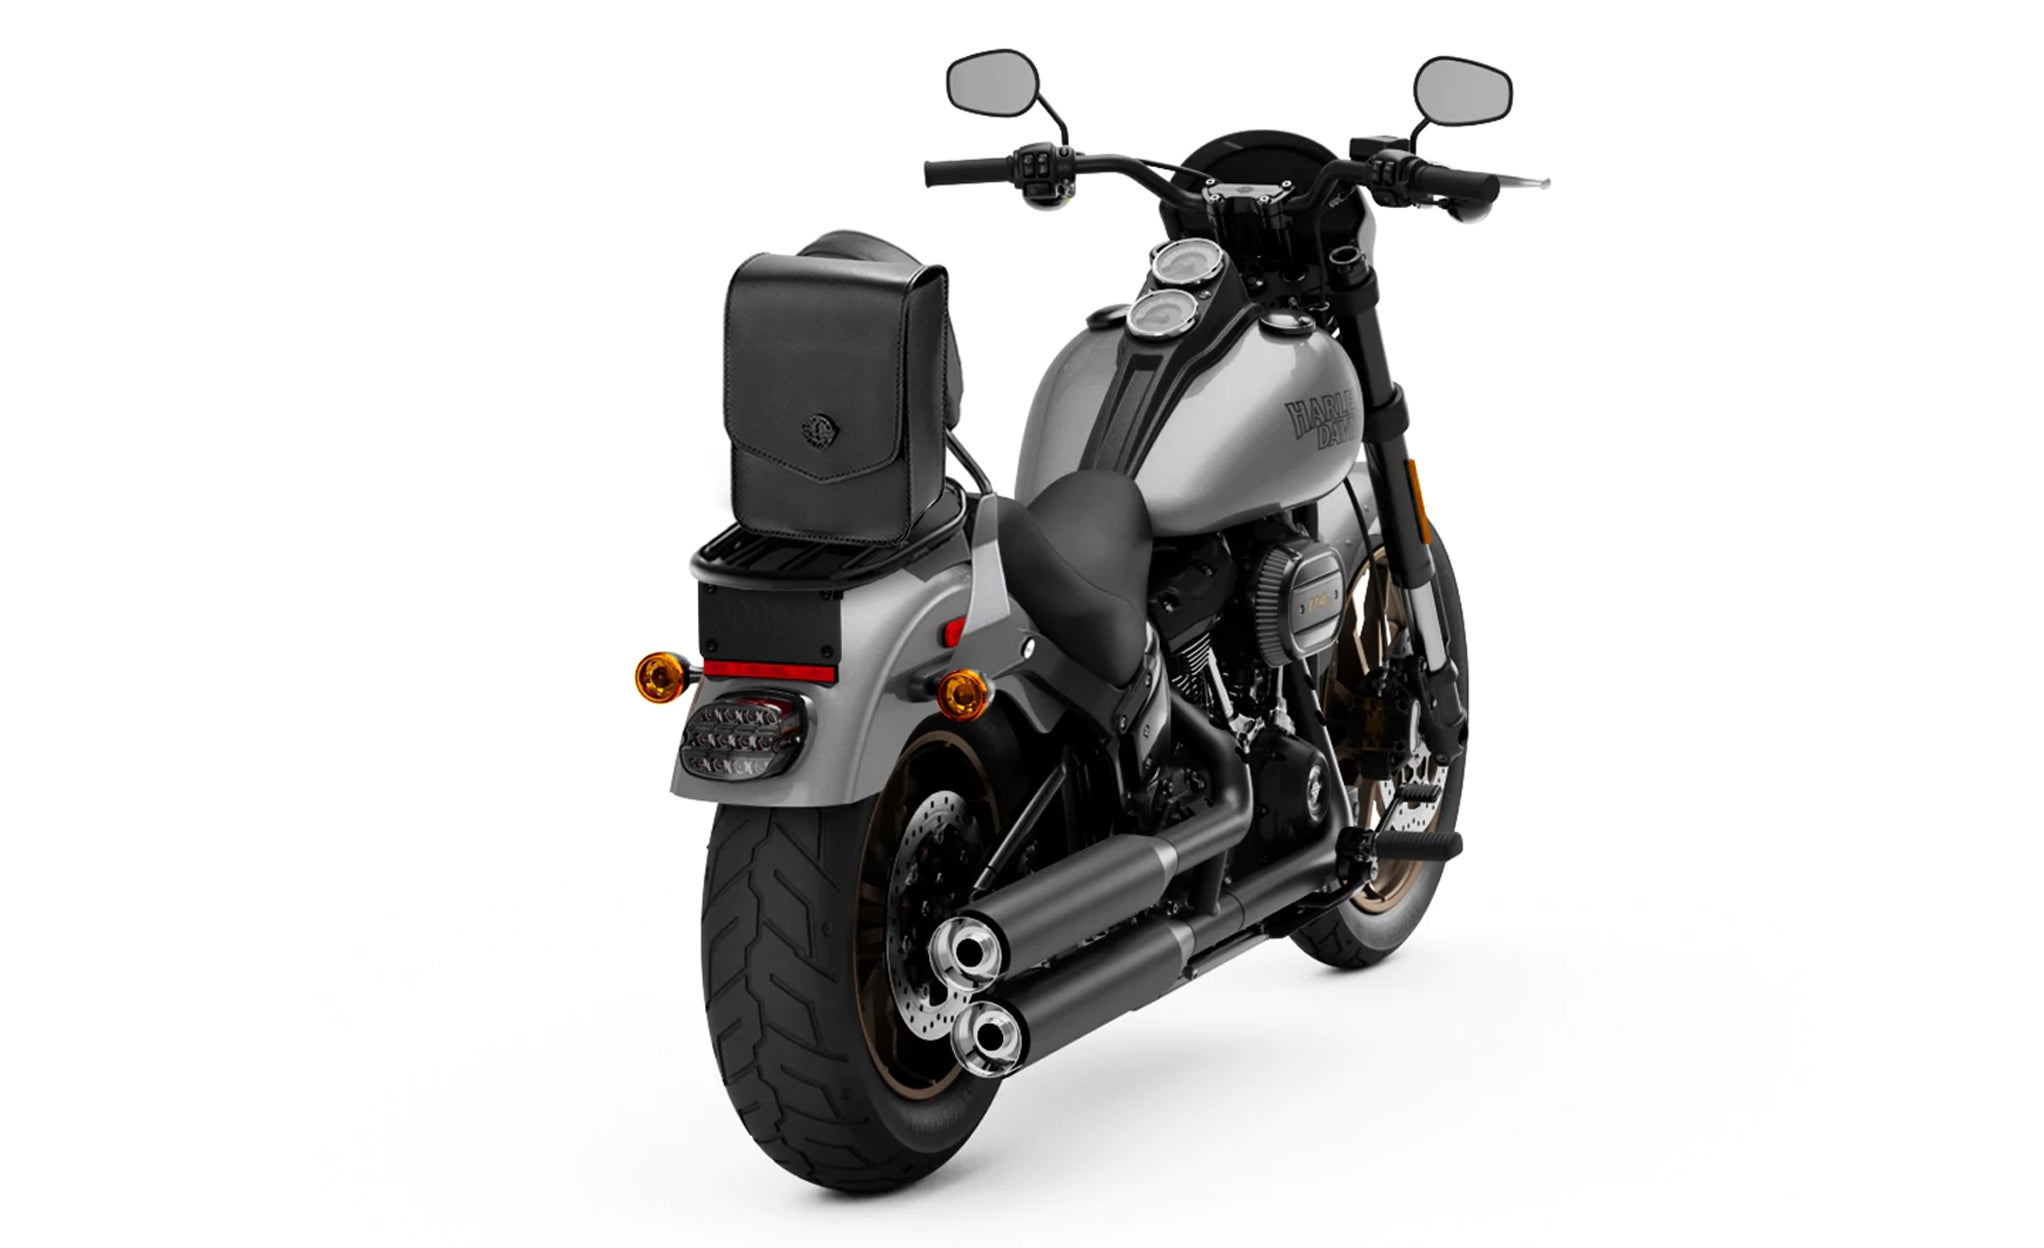 Viking Dark Age Small Kawasaki Motorcycle Sissy Bar Bag Bag on Bike View @expand